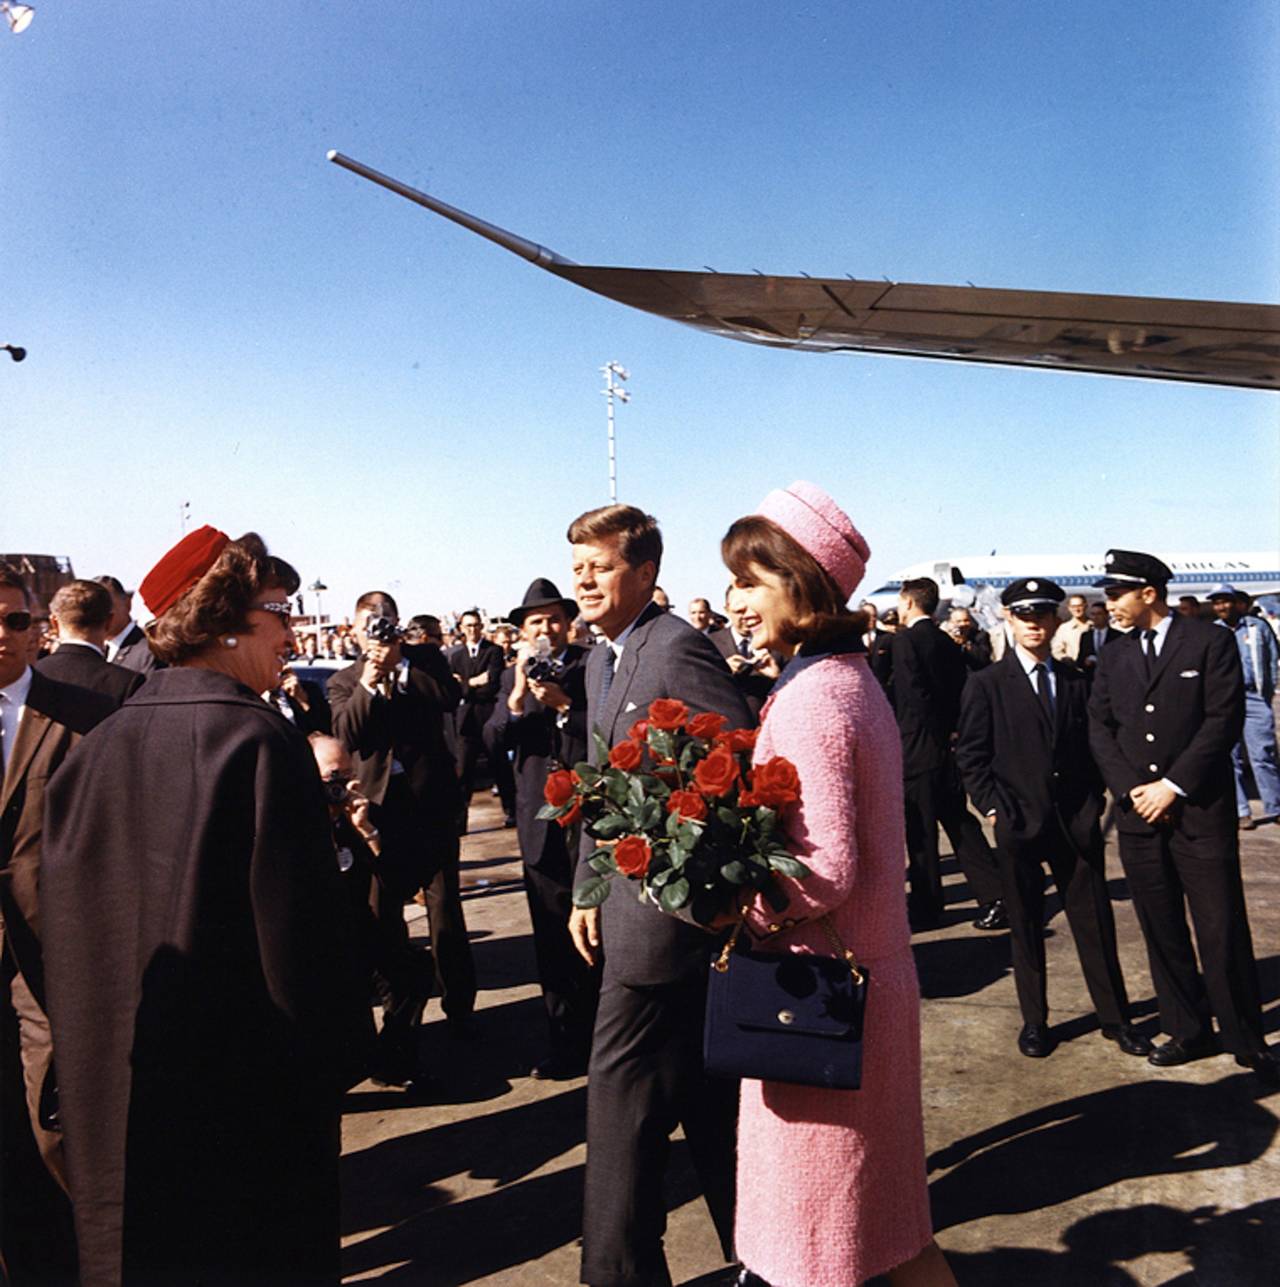 Imborrable. Esta fotografía muestra a John F. Kennedy (Cen.) junto a la primera dama Jacqueline Kennedy (Der) a su llegada a Dallas, Texas, el 22 de noviembre de 1963. Horas después sería asesinado y cambiaría la historia de los Estados Unidos. 